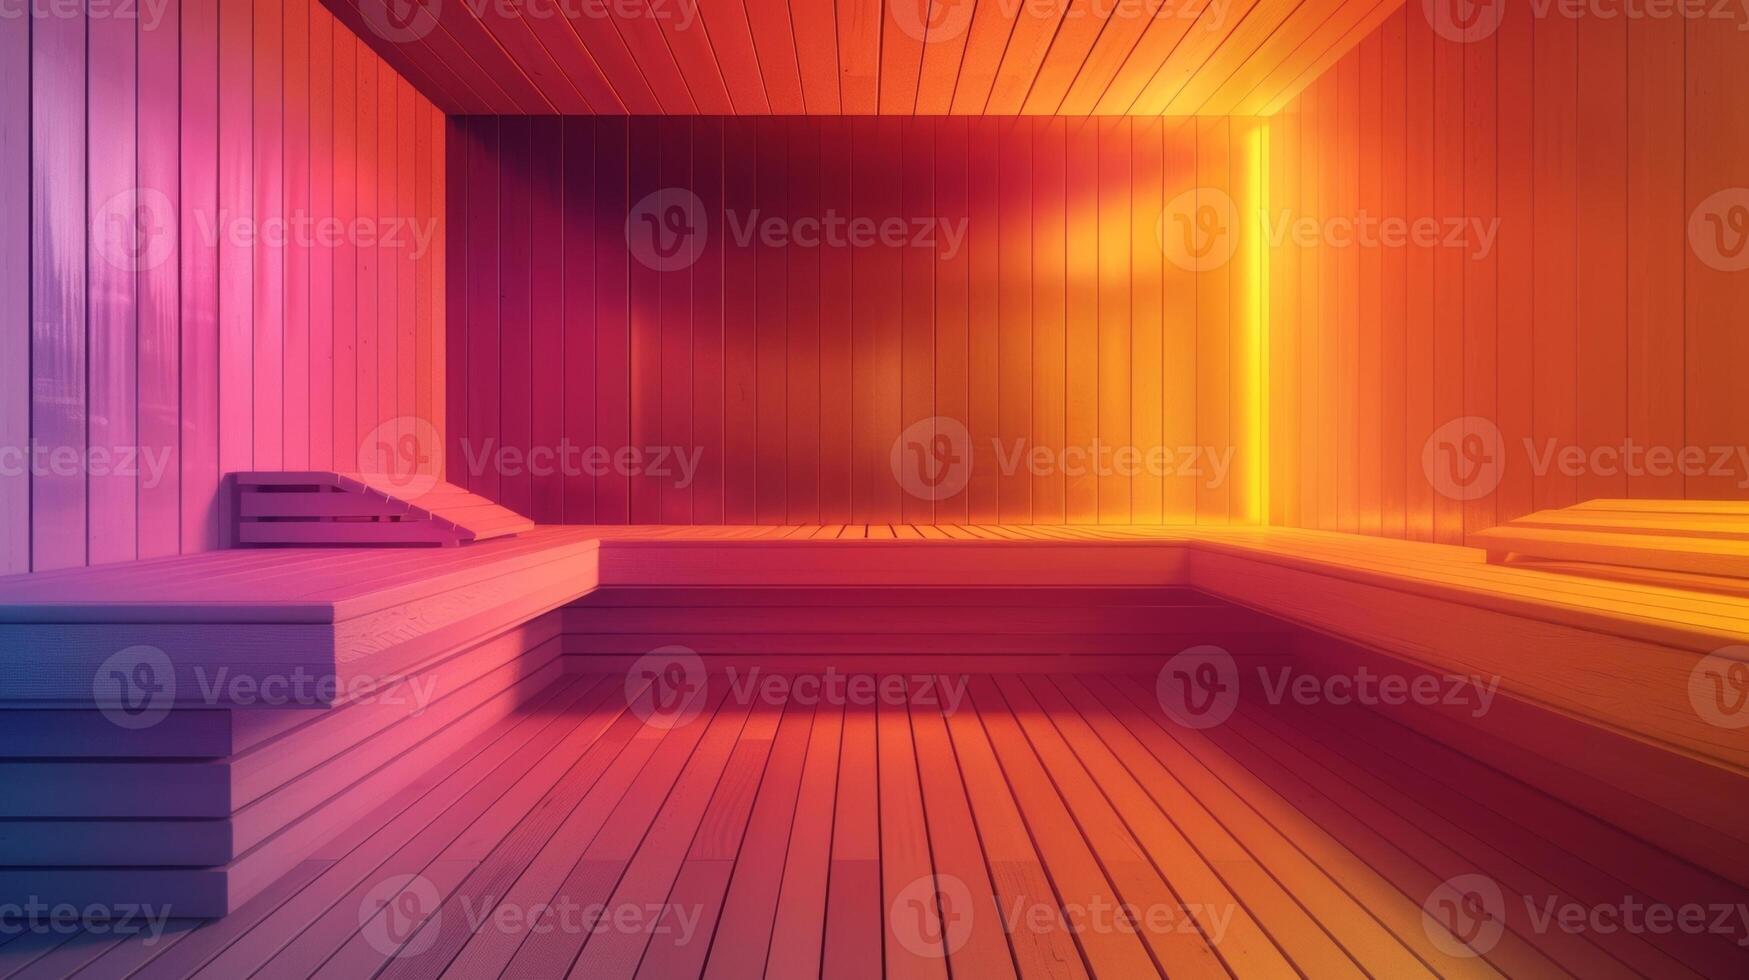 een kleurrijk infographic detaillering de Gezondheid voordelen van sauna gebruik en hoe het banden in de bedrijven algemeen focus Aan werknemer welzijn. foto